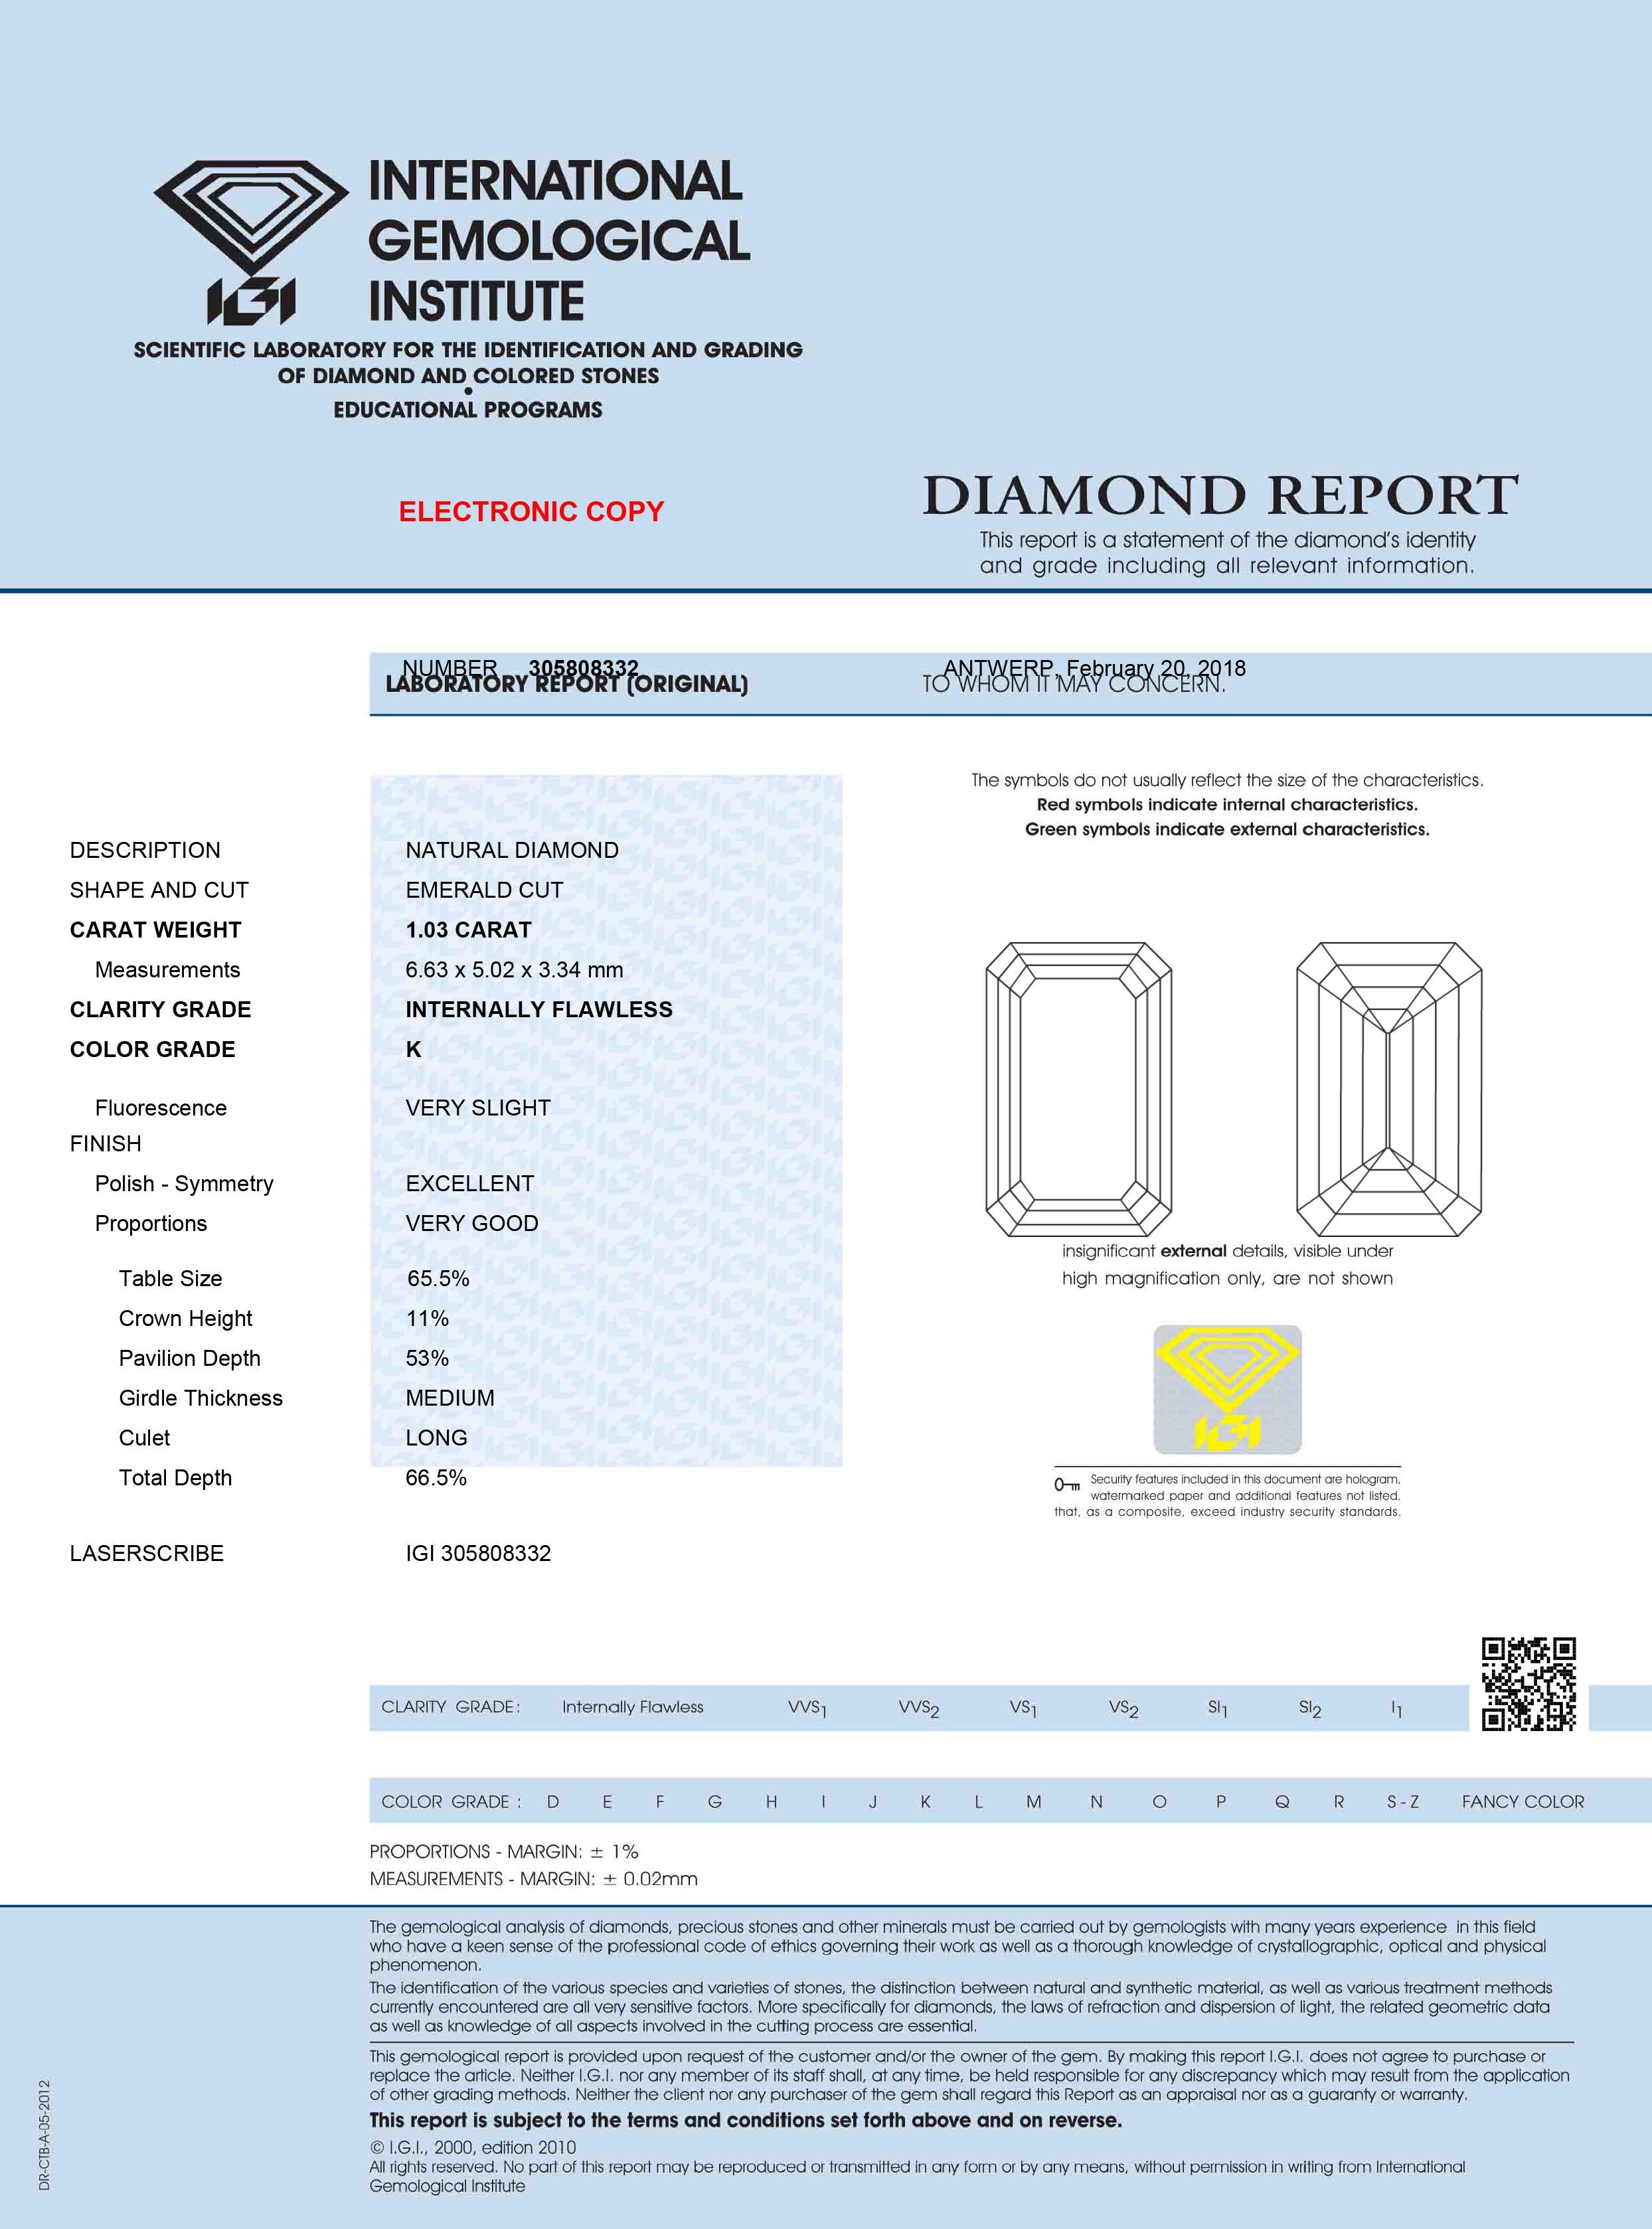 Modern TJD IGI Certified 1.03 Carat Emerald Cut Loose Diamond, K Color IF Clarity For Sale